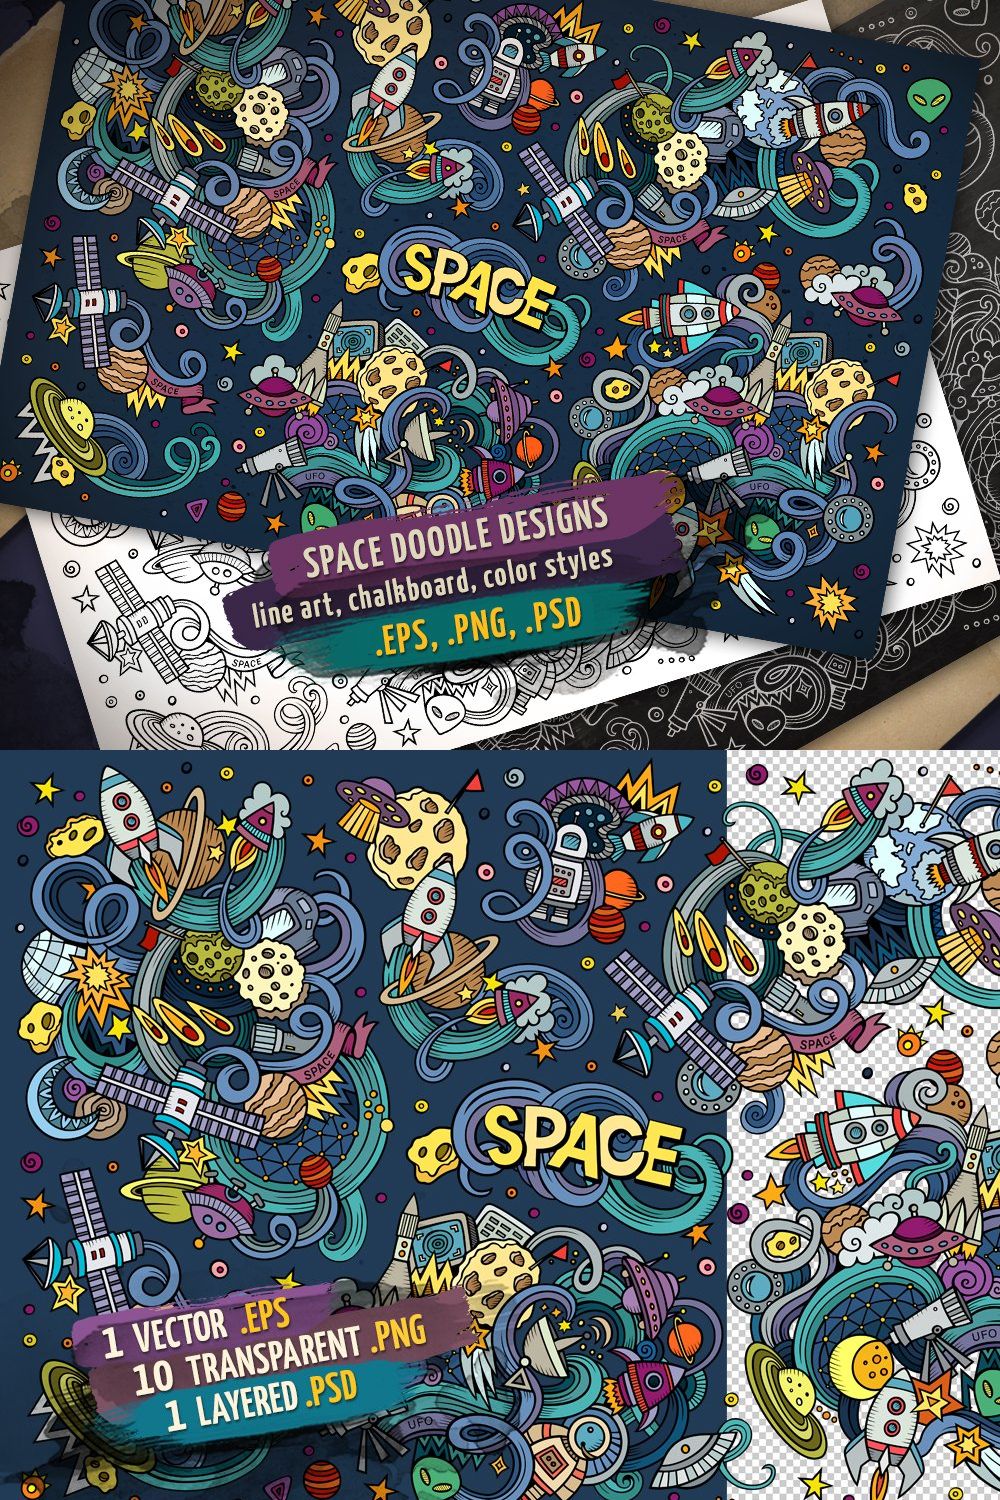 Space Doodles Designs Set pinterest preview image.